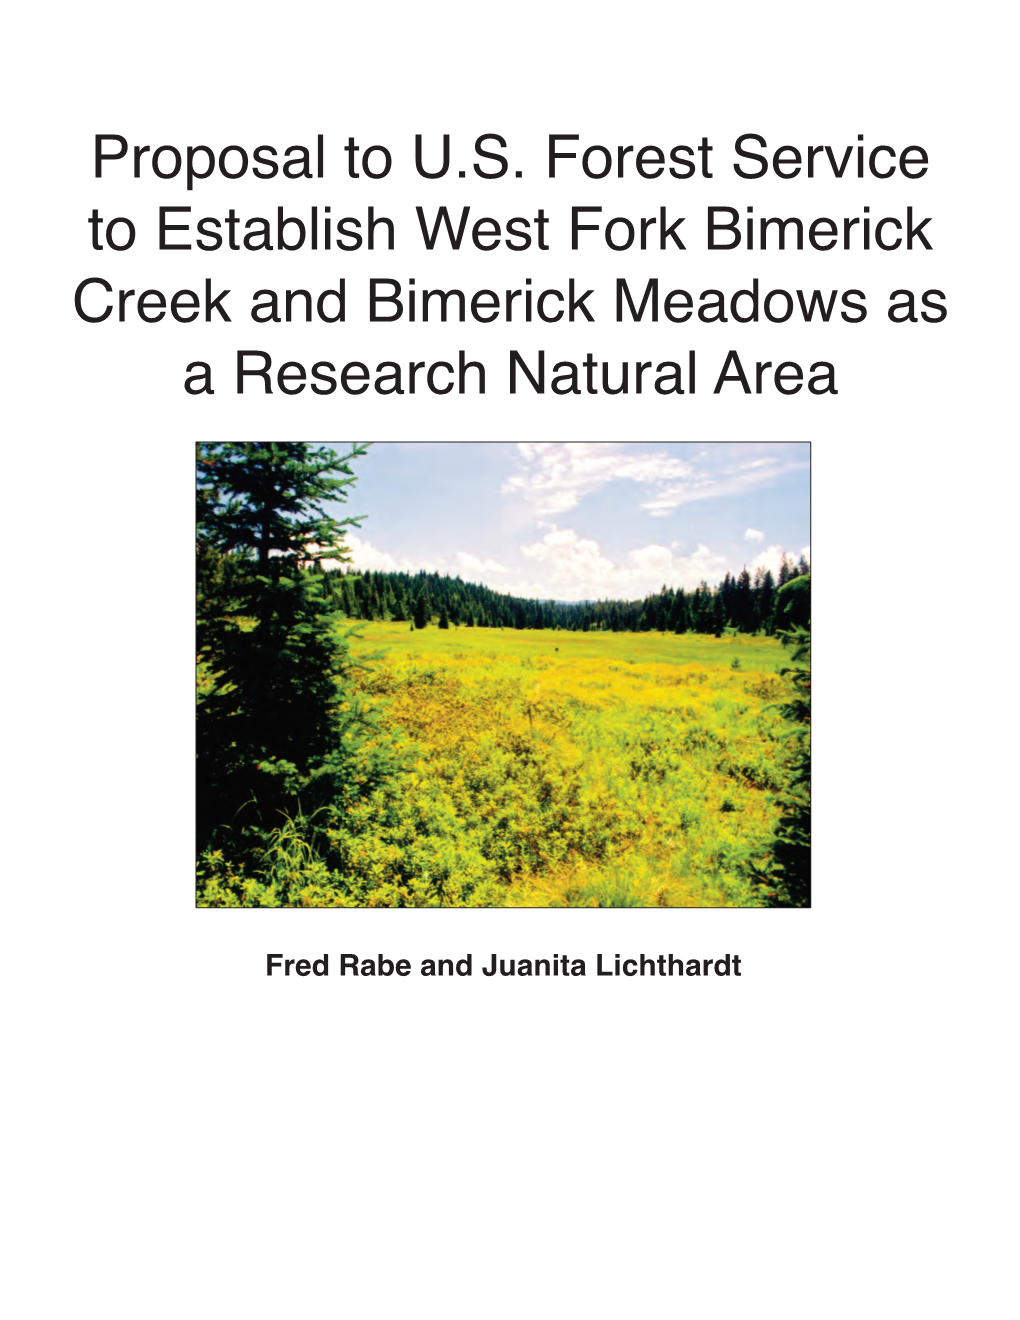 W. Fork Bimerick Creek & Meadows RNA Proposal.Pdf